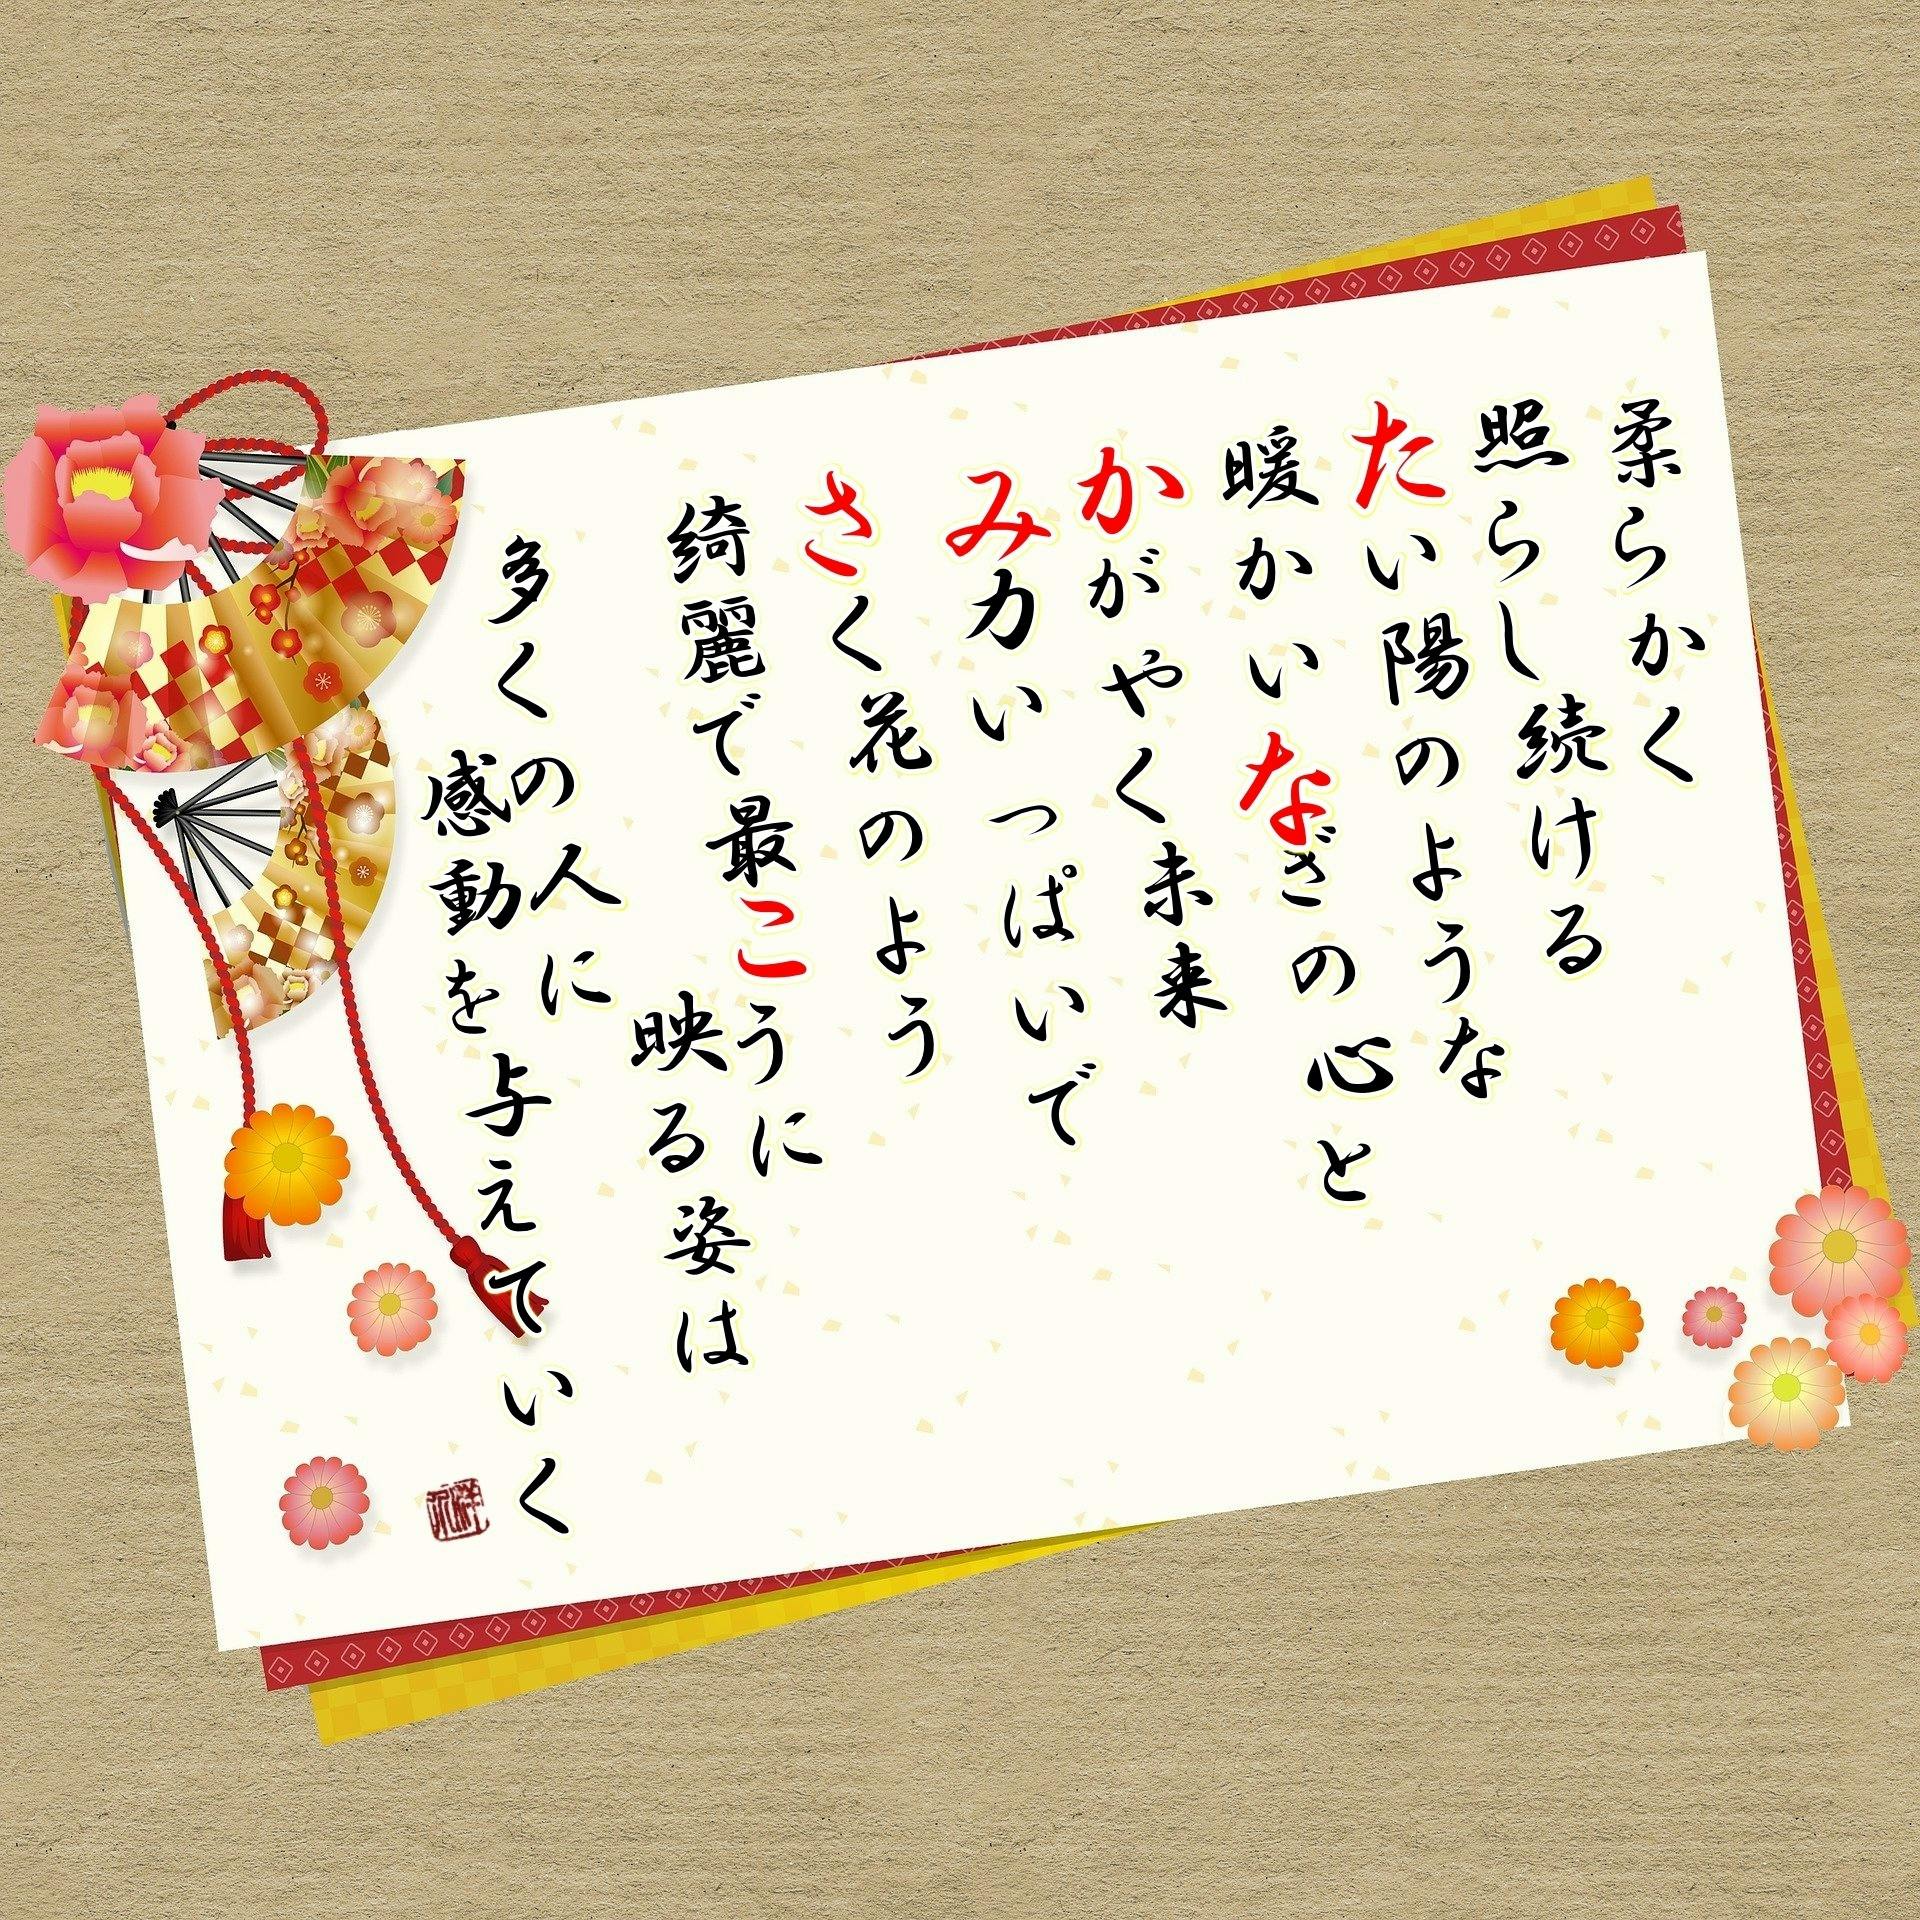 本日は女優の 田中美佐子 さんのお誕生日です 名前詩を作成しました Campfireコミュニティ